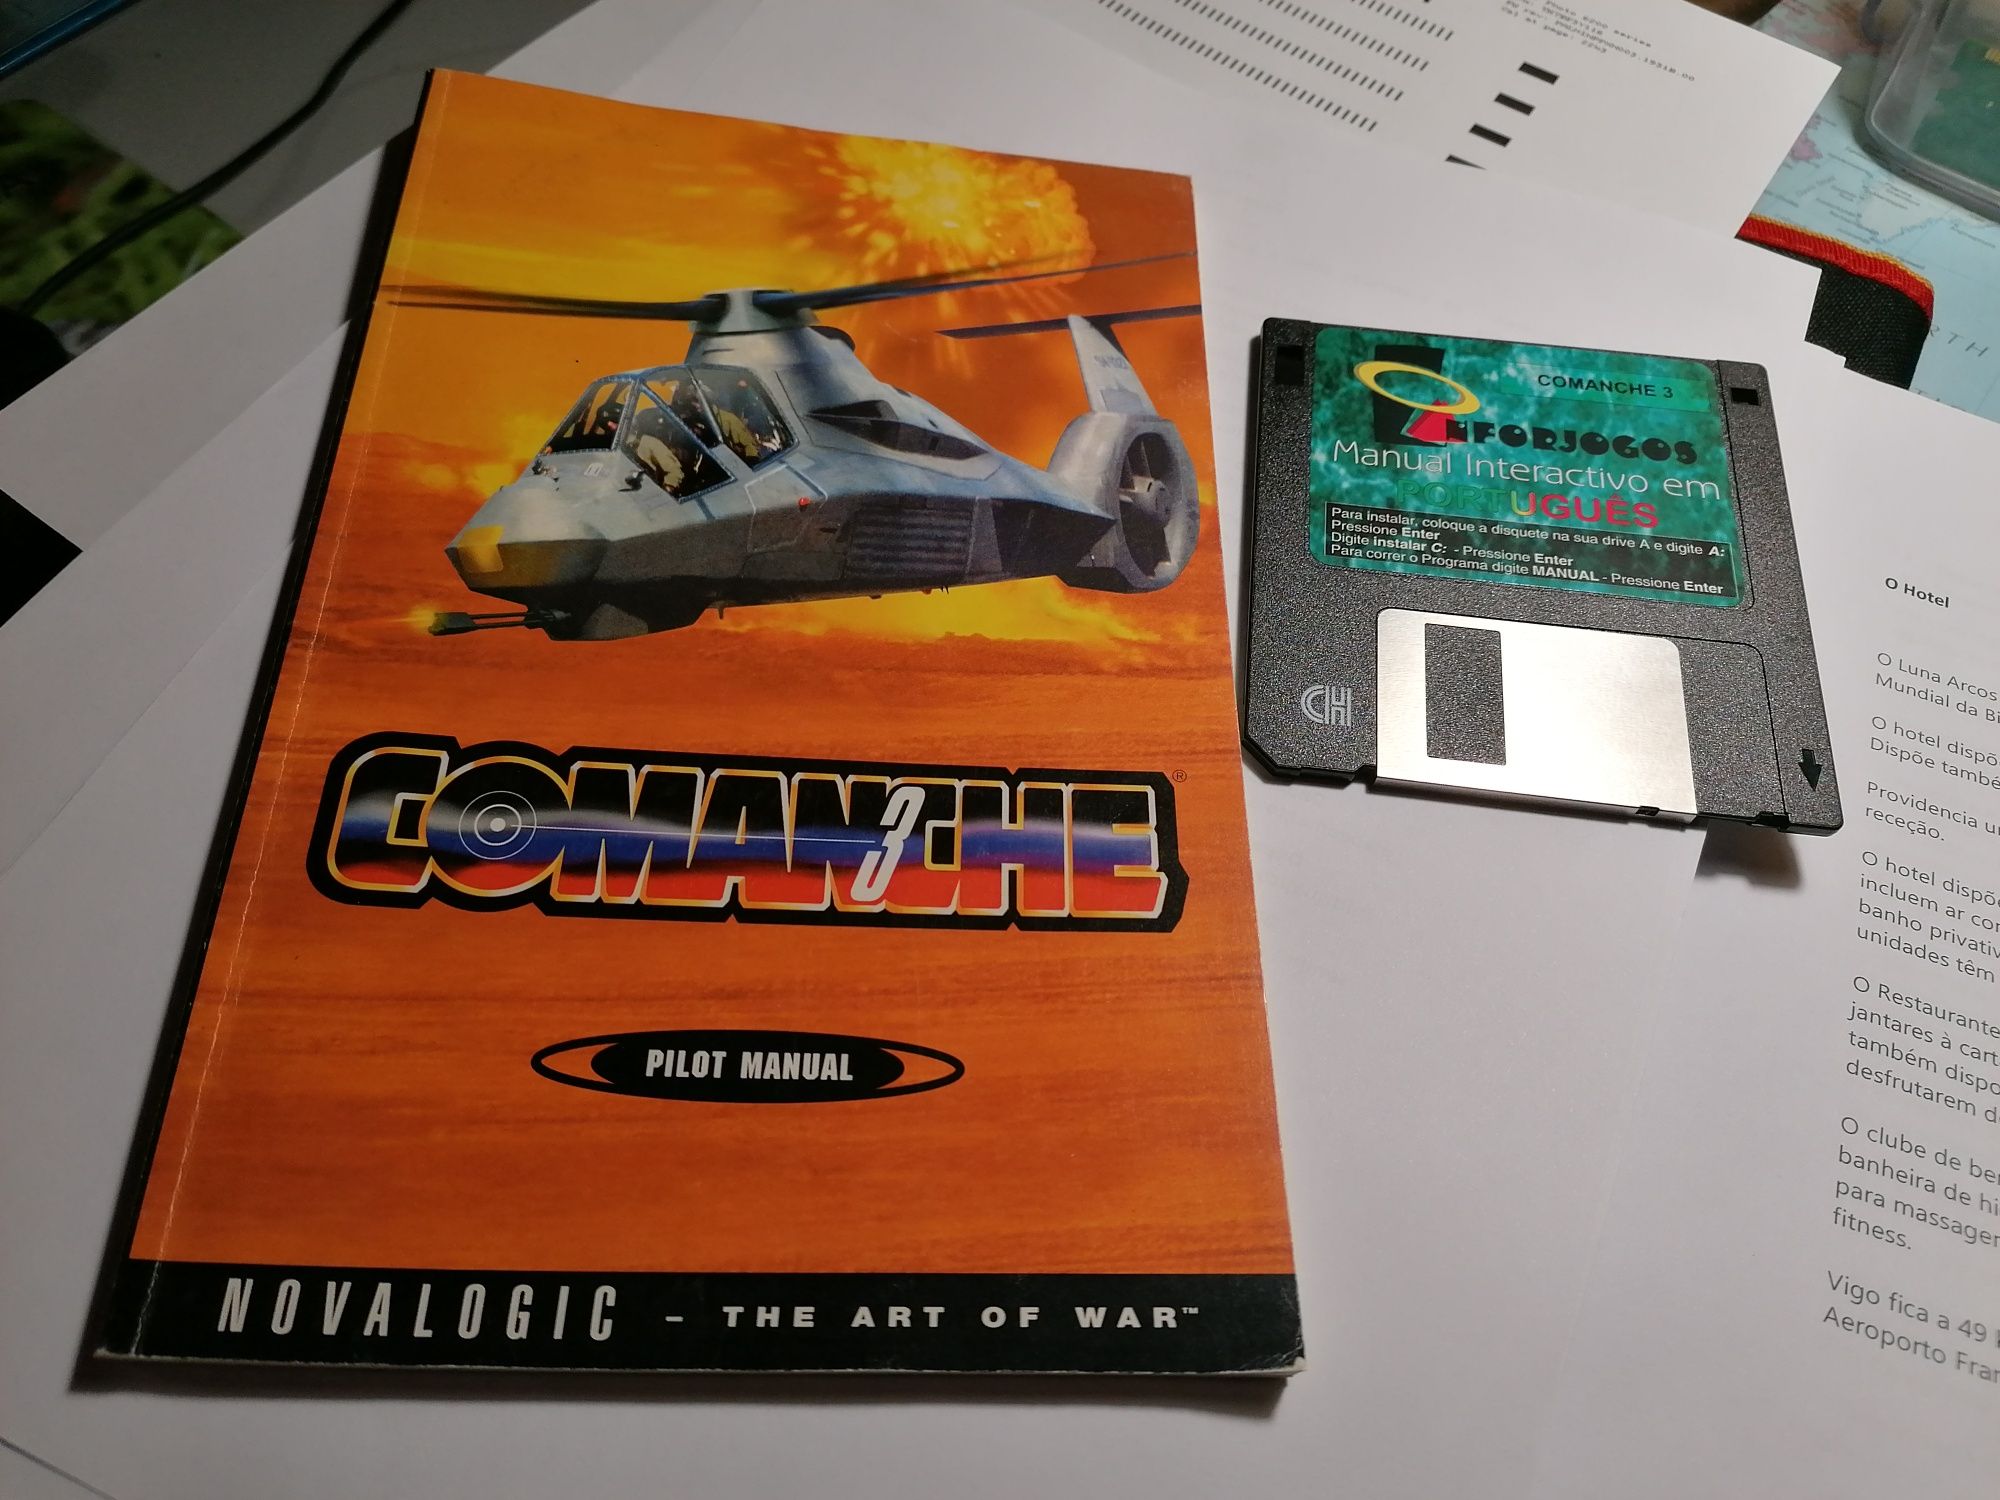 Disquete e Manual PT jogo Comanche 3 inforjogos